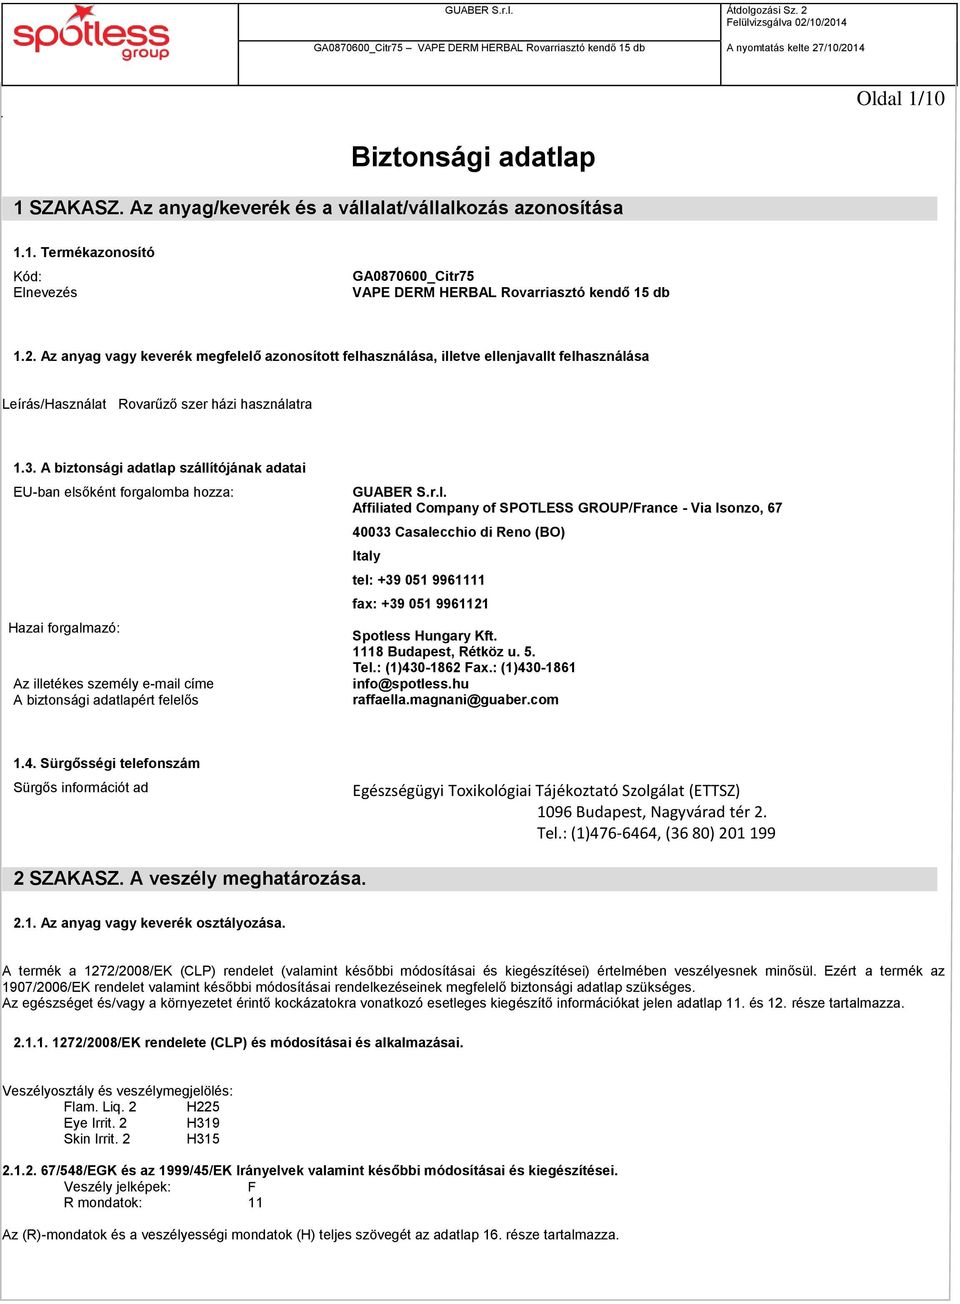 A biztonsági adatlap szállítójának adatai EU-ban elsőként forgalomba hozza: Hazai forgalmazó: Az illetékes személy e-mail címe A biztonsági adatlapért felelős GUABER S.r.l. Affiliated Company of SPOTLESS GROUP/France - Via Isonzo, 67 40033 Casalecchio di Reno (BO) Italy tel: +39 051 9961111 fax: +39 051 9961121 Spotless Hungary Kft.